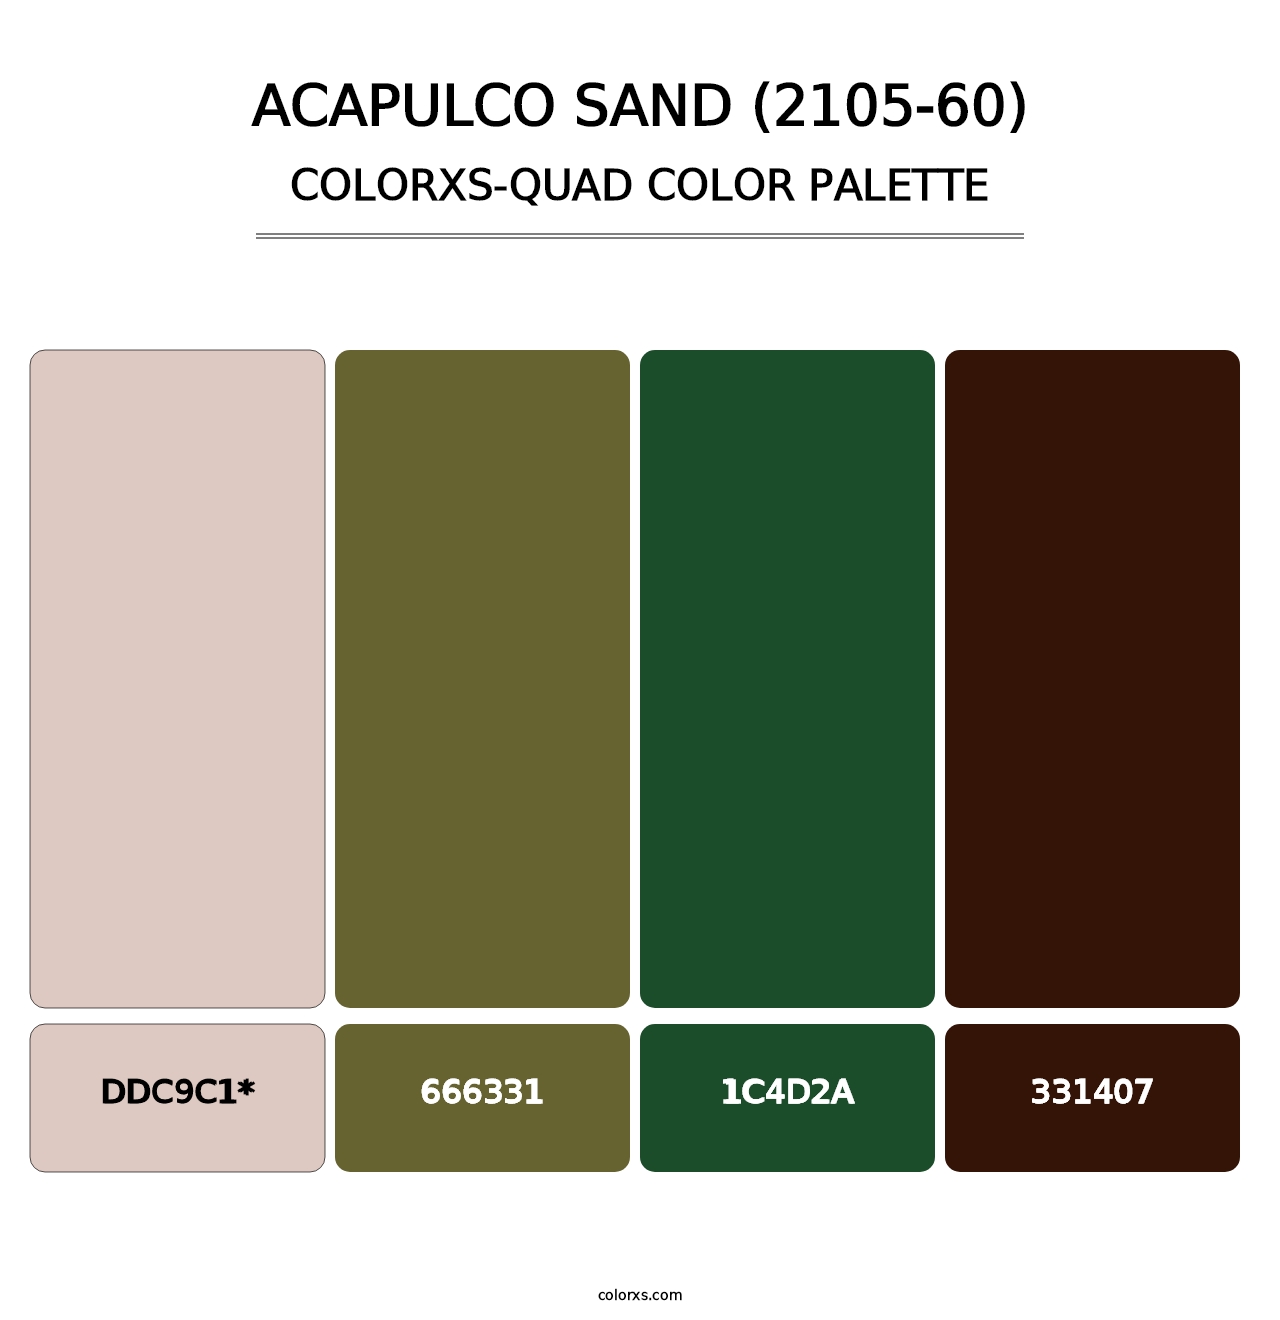 Acapulco Sand (2105-60) - Colorxs Quad Palette